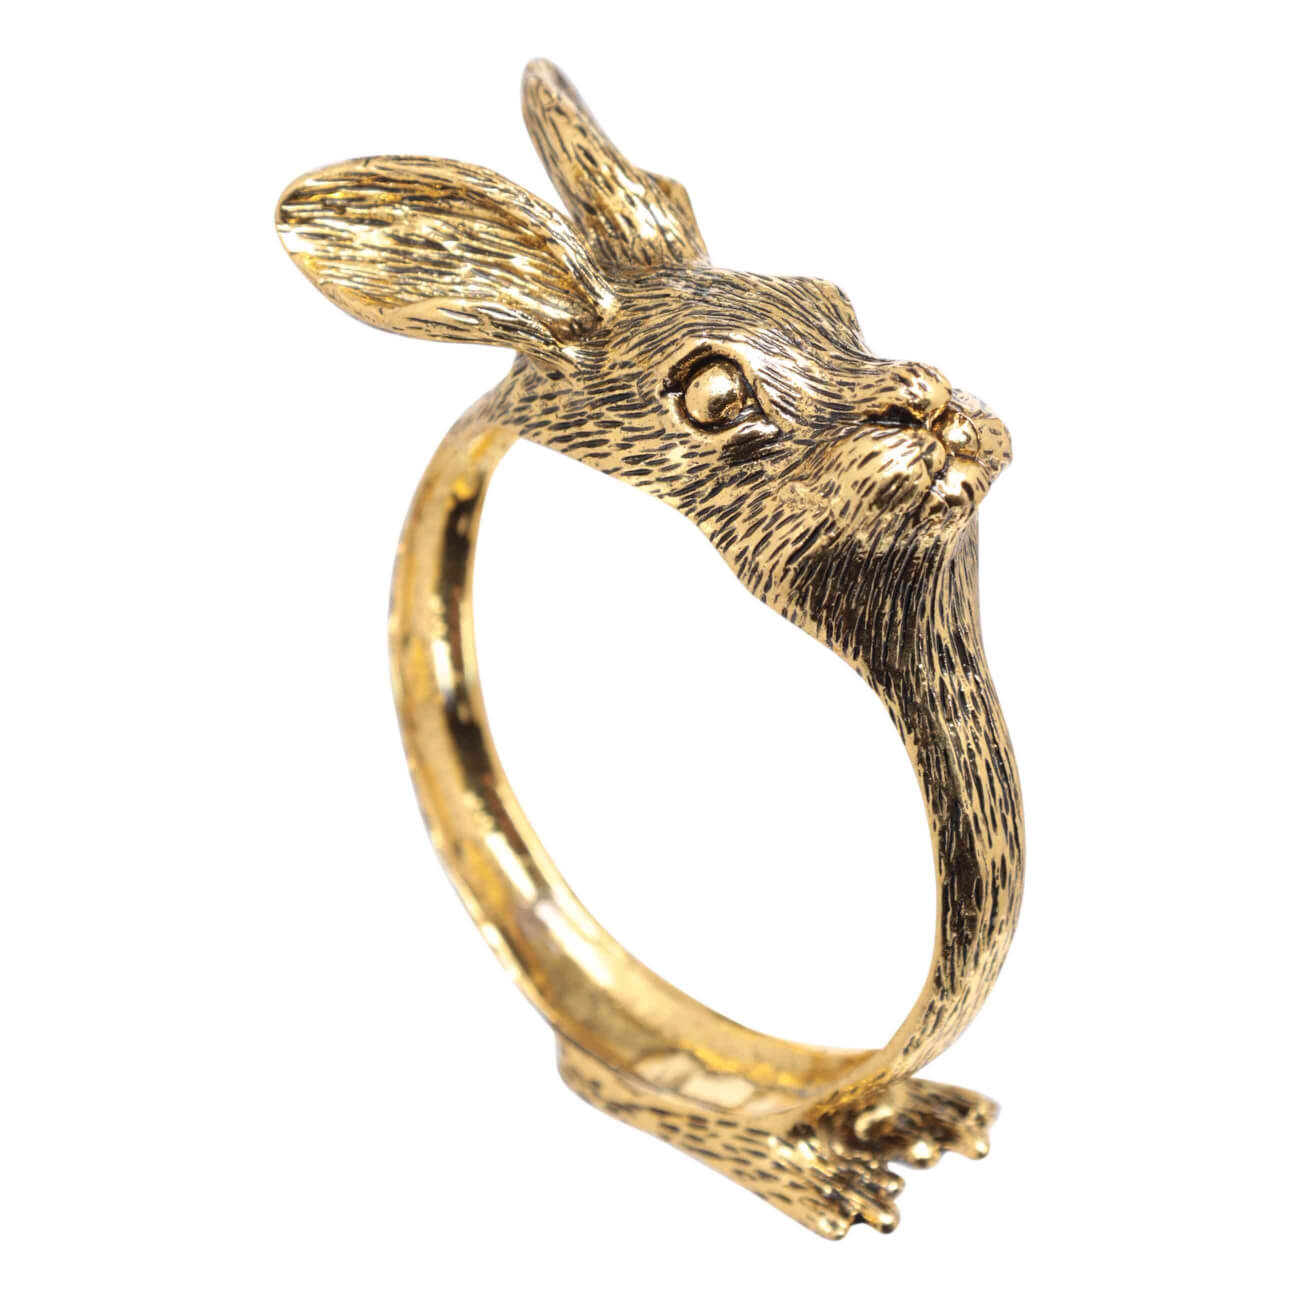 кольцо для салфеток 5 см металл золотистое гранаты с листьями pomegranate Кольцо для салфеток, 6 см, металл, золотистое, Кролик, Rabbit gold